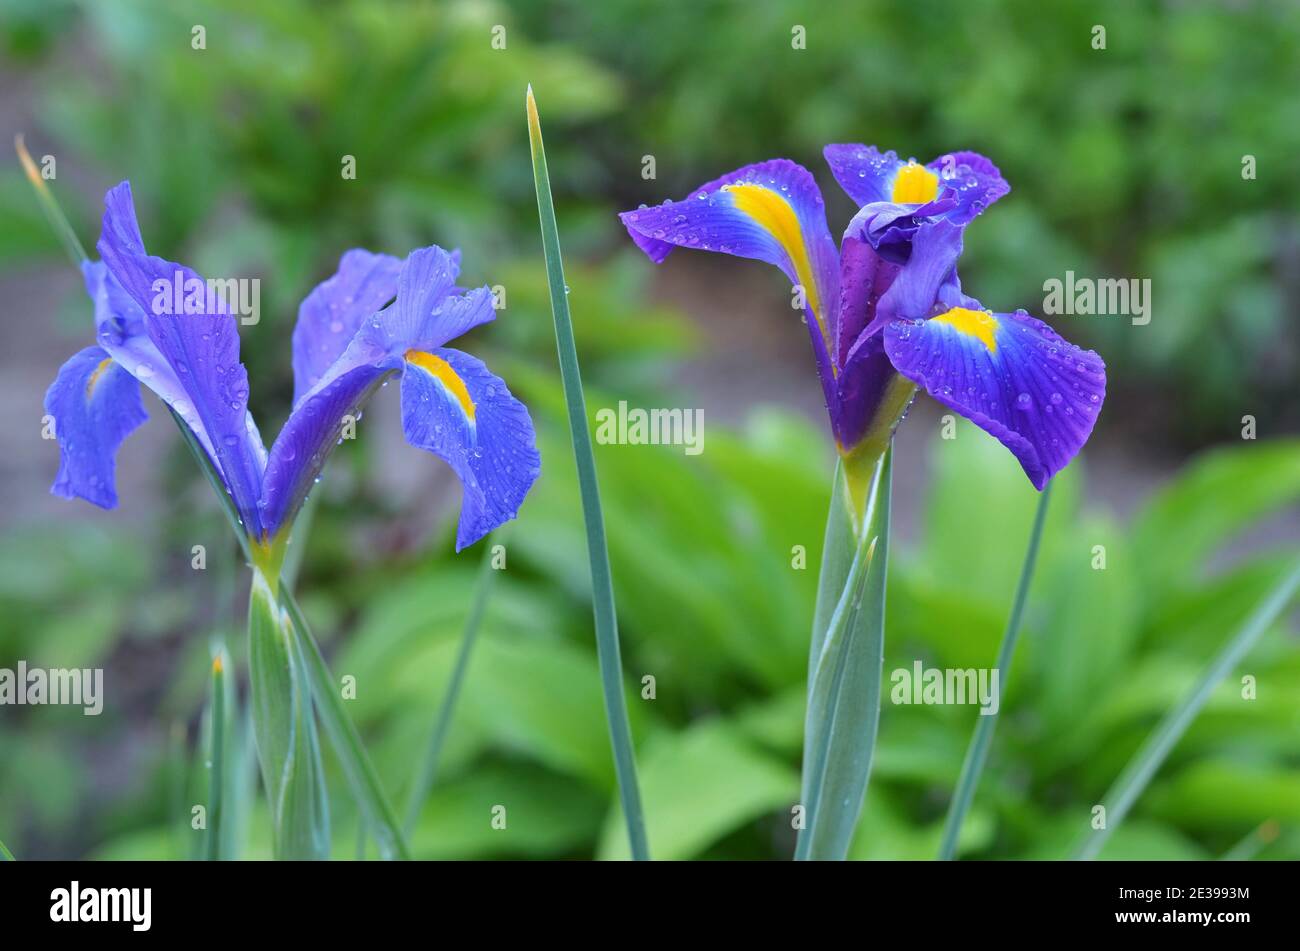 Hollandische Iris oder Iris Hollandica ist eine Zierpflanze, deren Blütenblätter mit Wassertröpfchen aus nächster Nähe bedeckt sind. Stockfoto